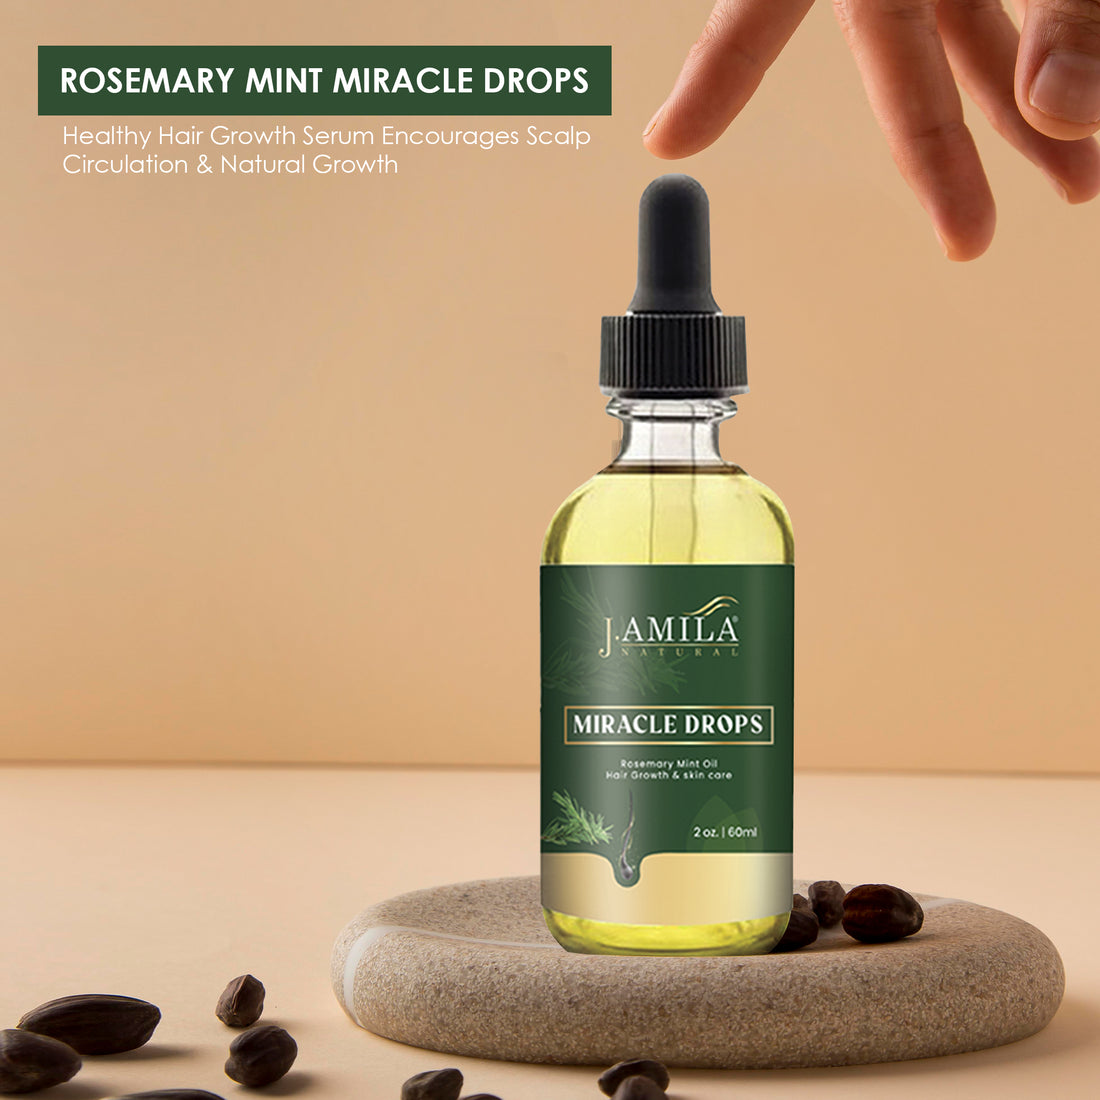 J. AMILA Natural Miracle Drops Rosemary Mint Oil Hair (2oz)